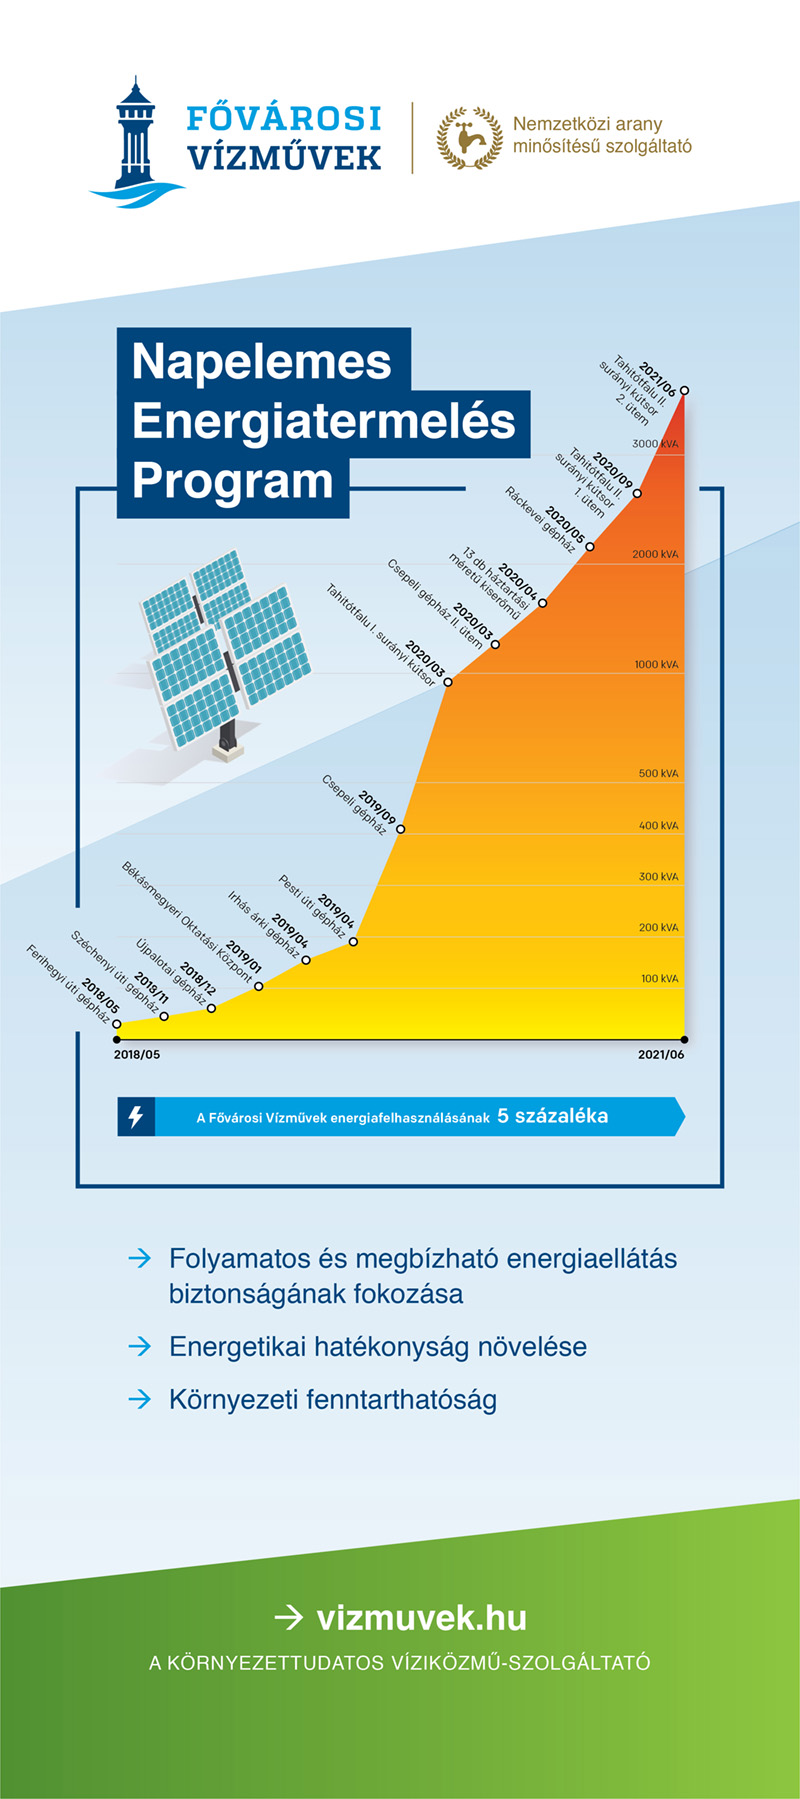 A képen a napelem energiatermelési program terve látható.